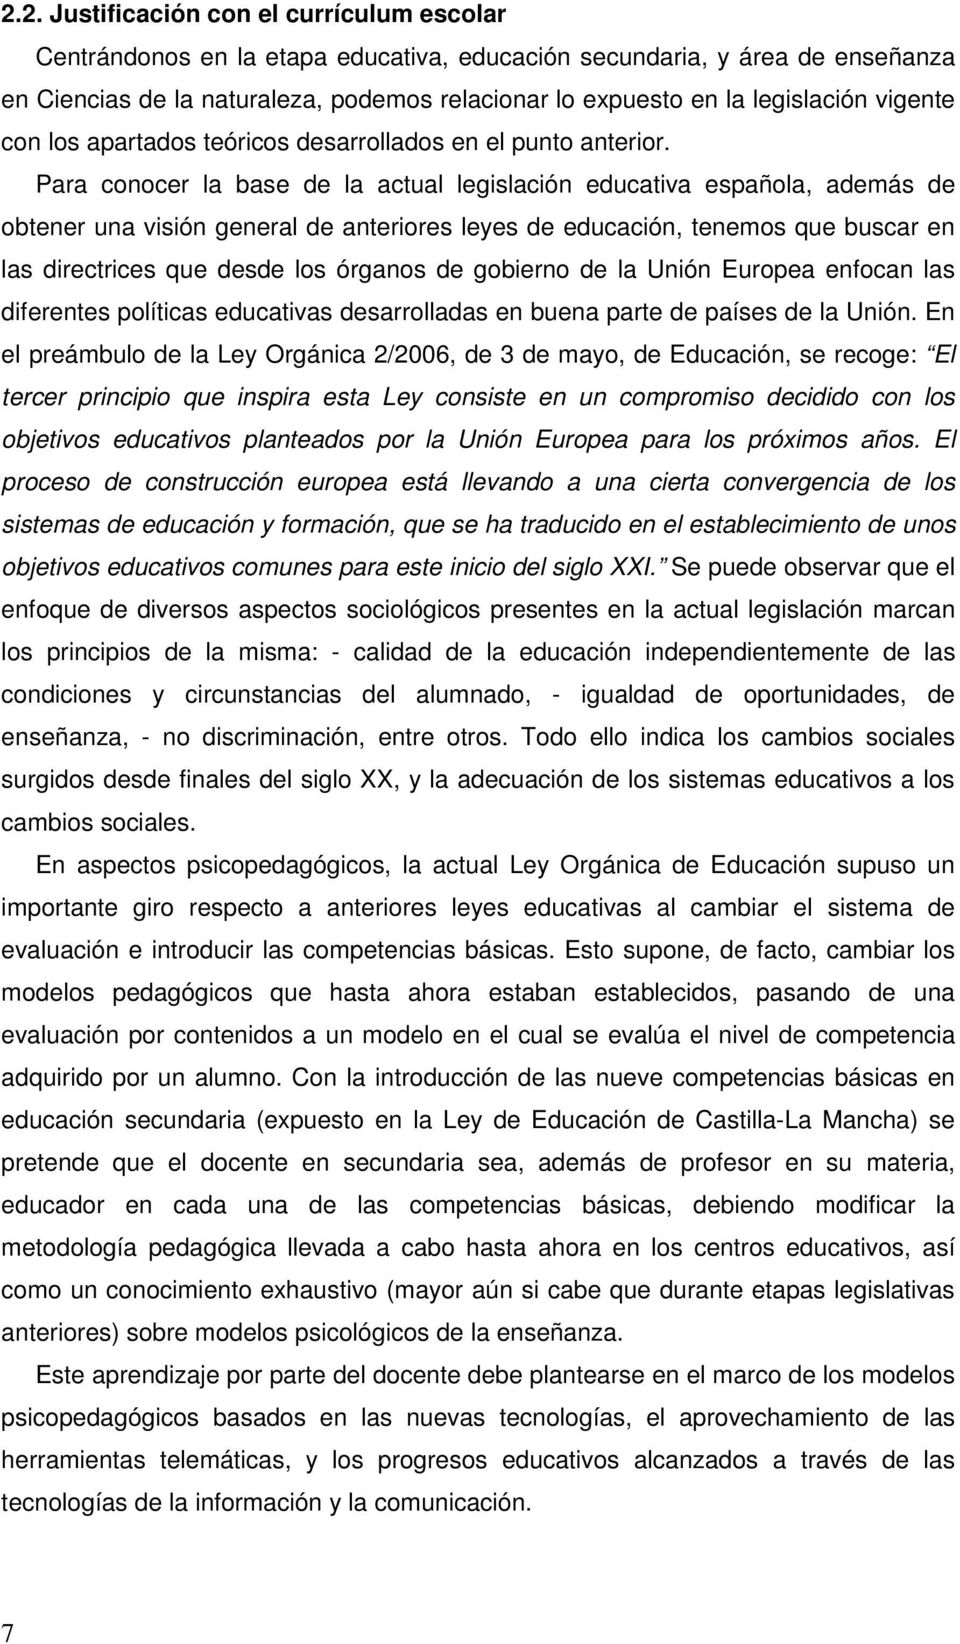 Para conocer la base de la actual legislación educativa española, además de obtener una visión general de anteriores leyes de educación, tenemos que buscar en las directrices que desde los órganos de